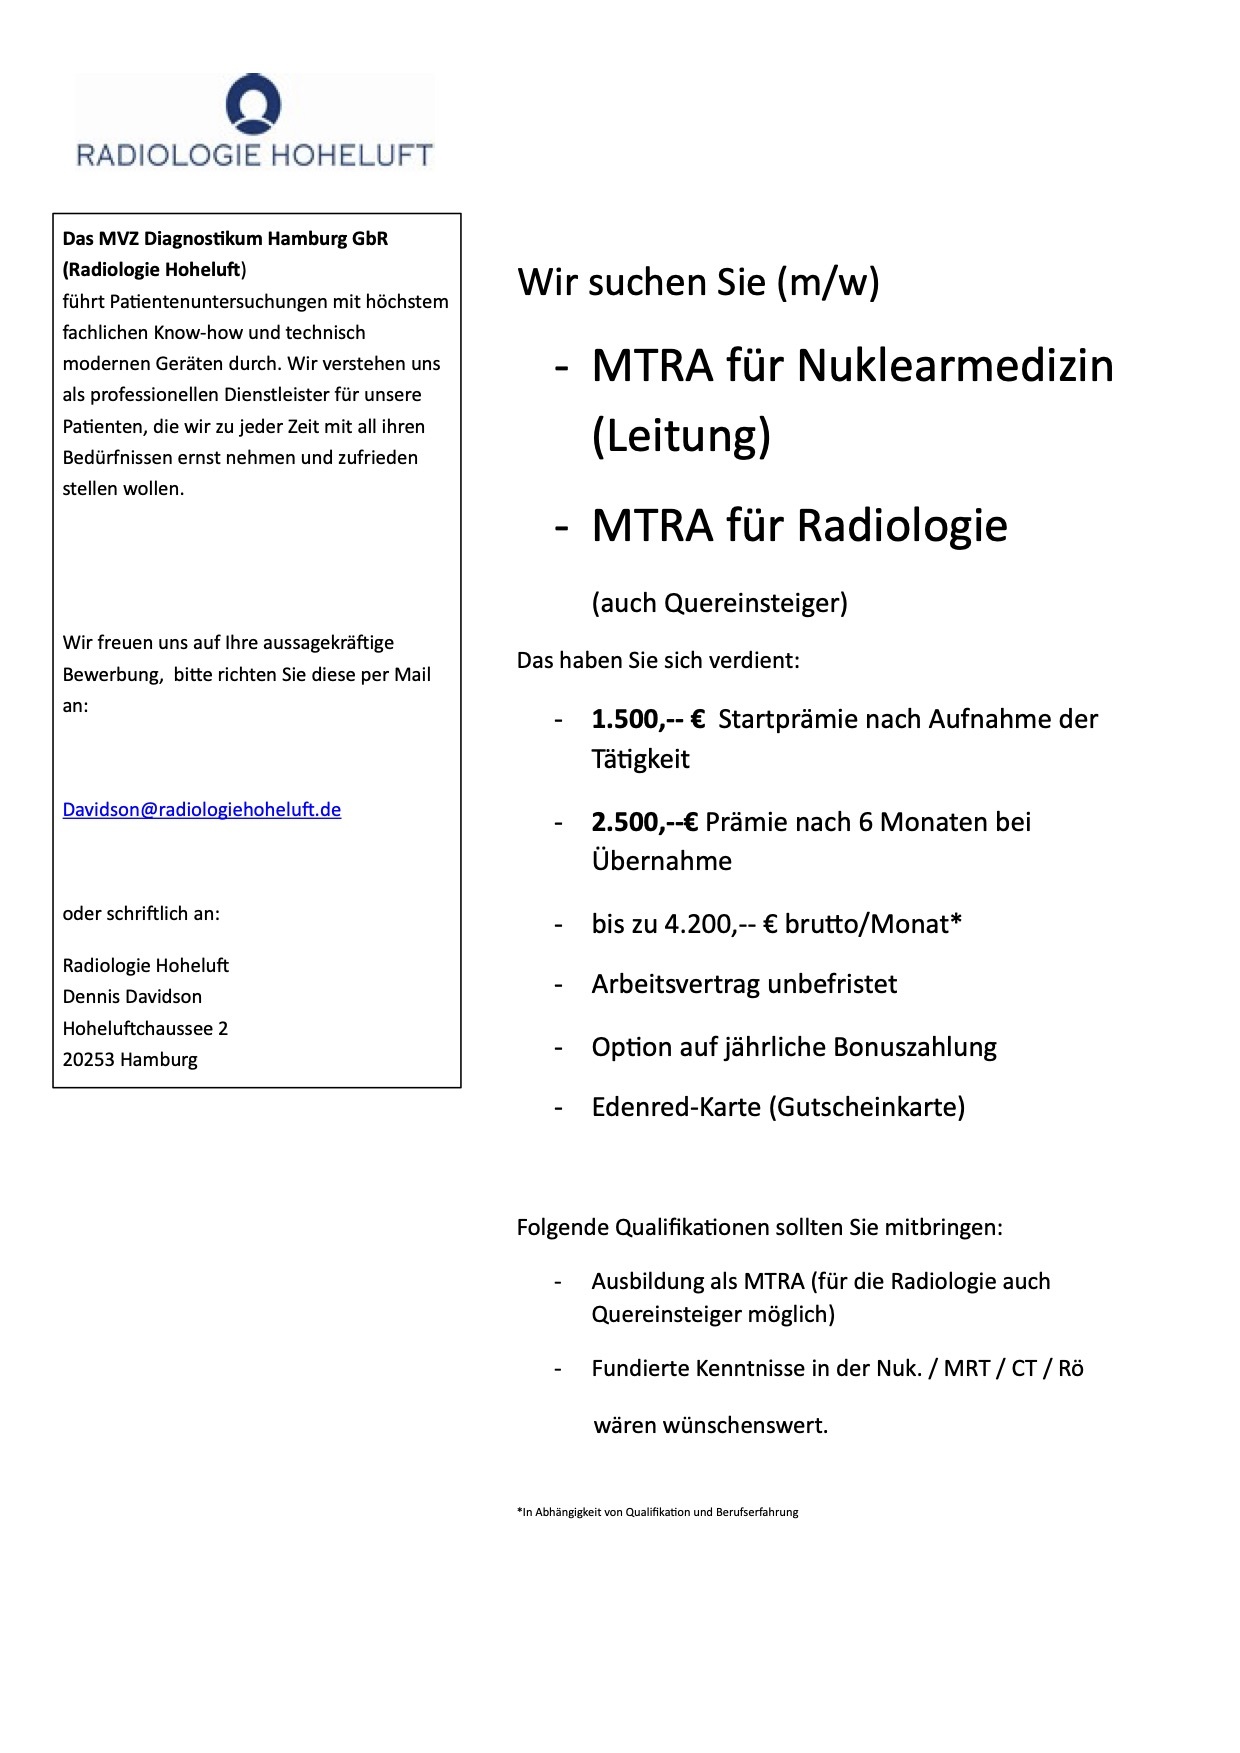 MTRA (w/m) am Standort Schwalmstadt